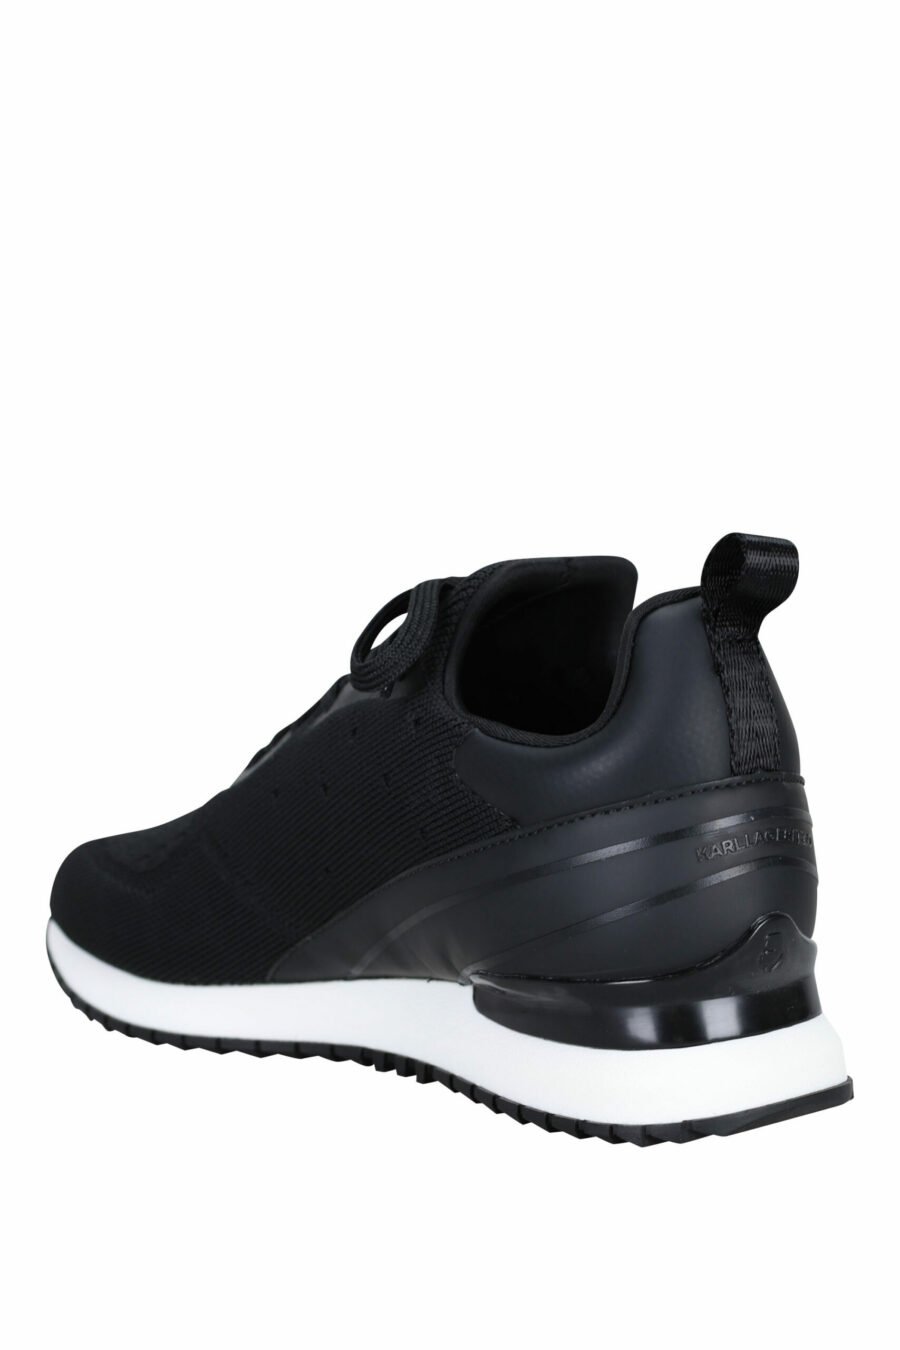 Zapatillas negras "velocitor" con logo "rue st guillaume" blanco - 5059529326370 3 scaled